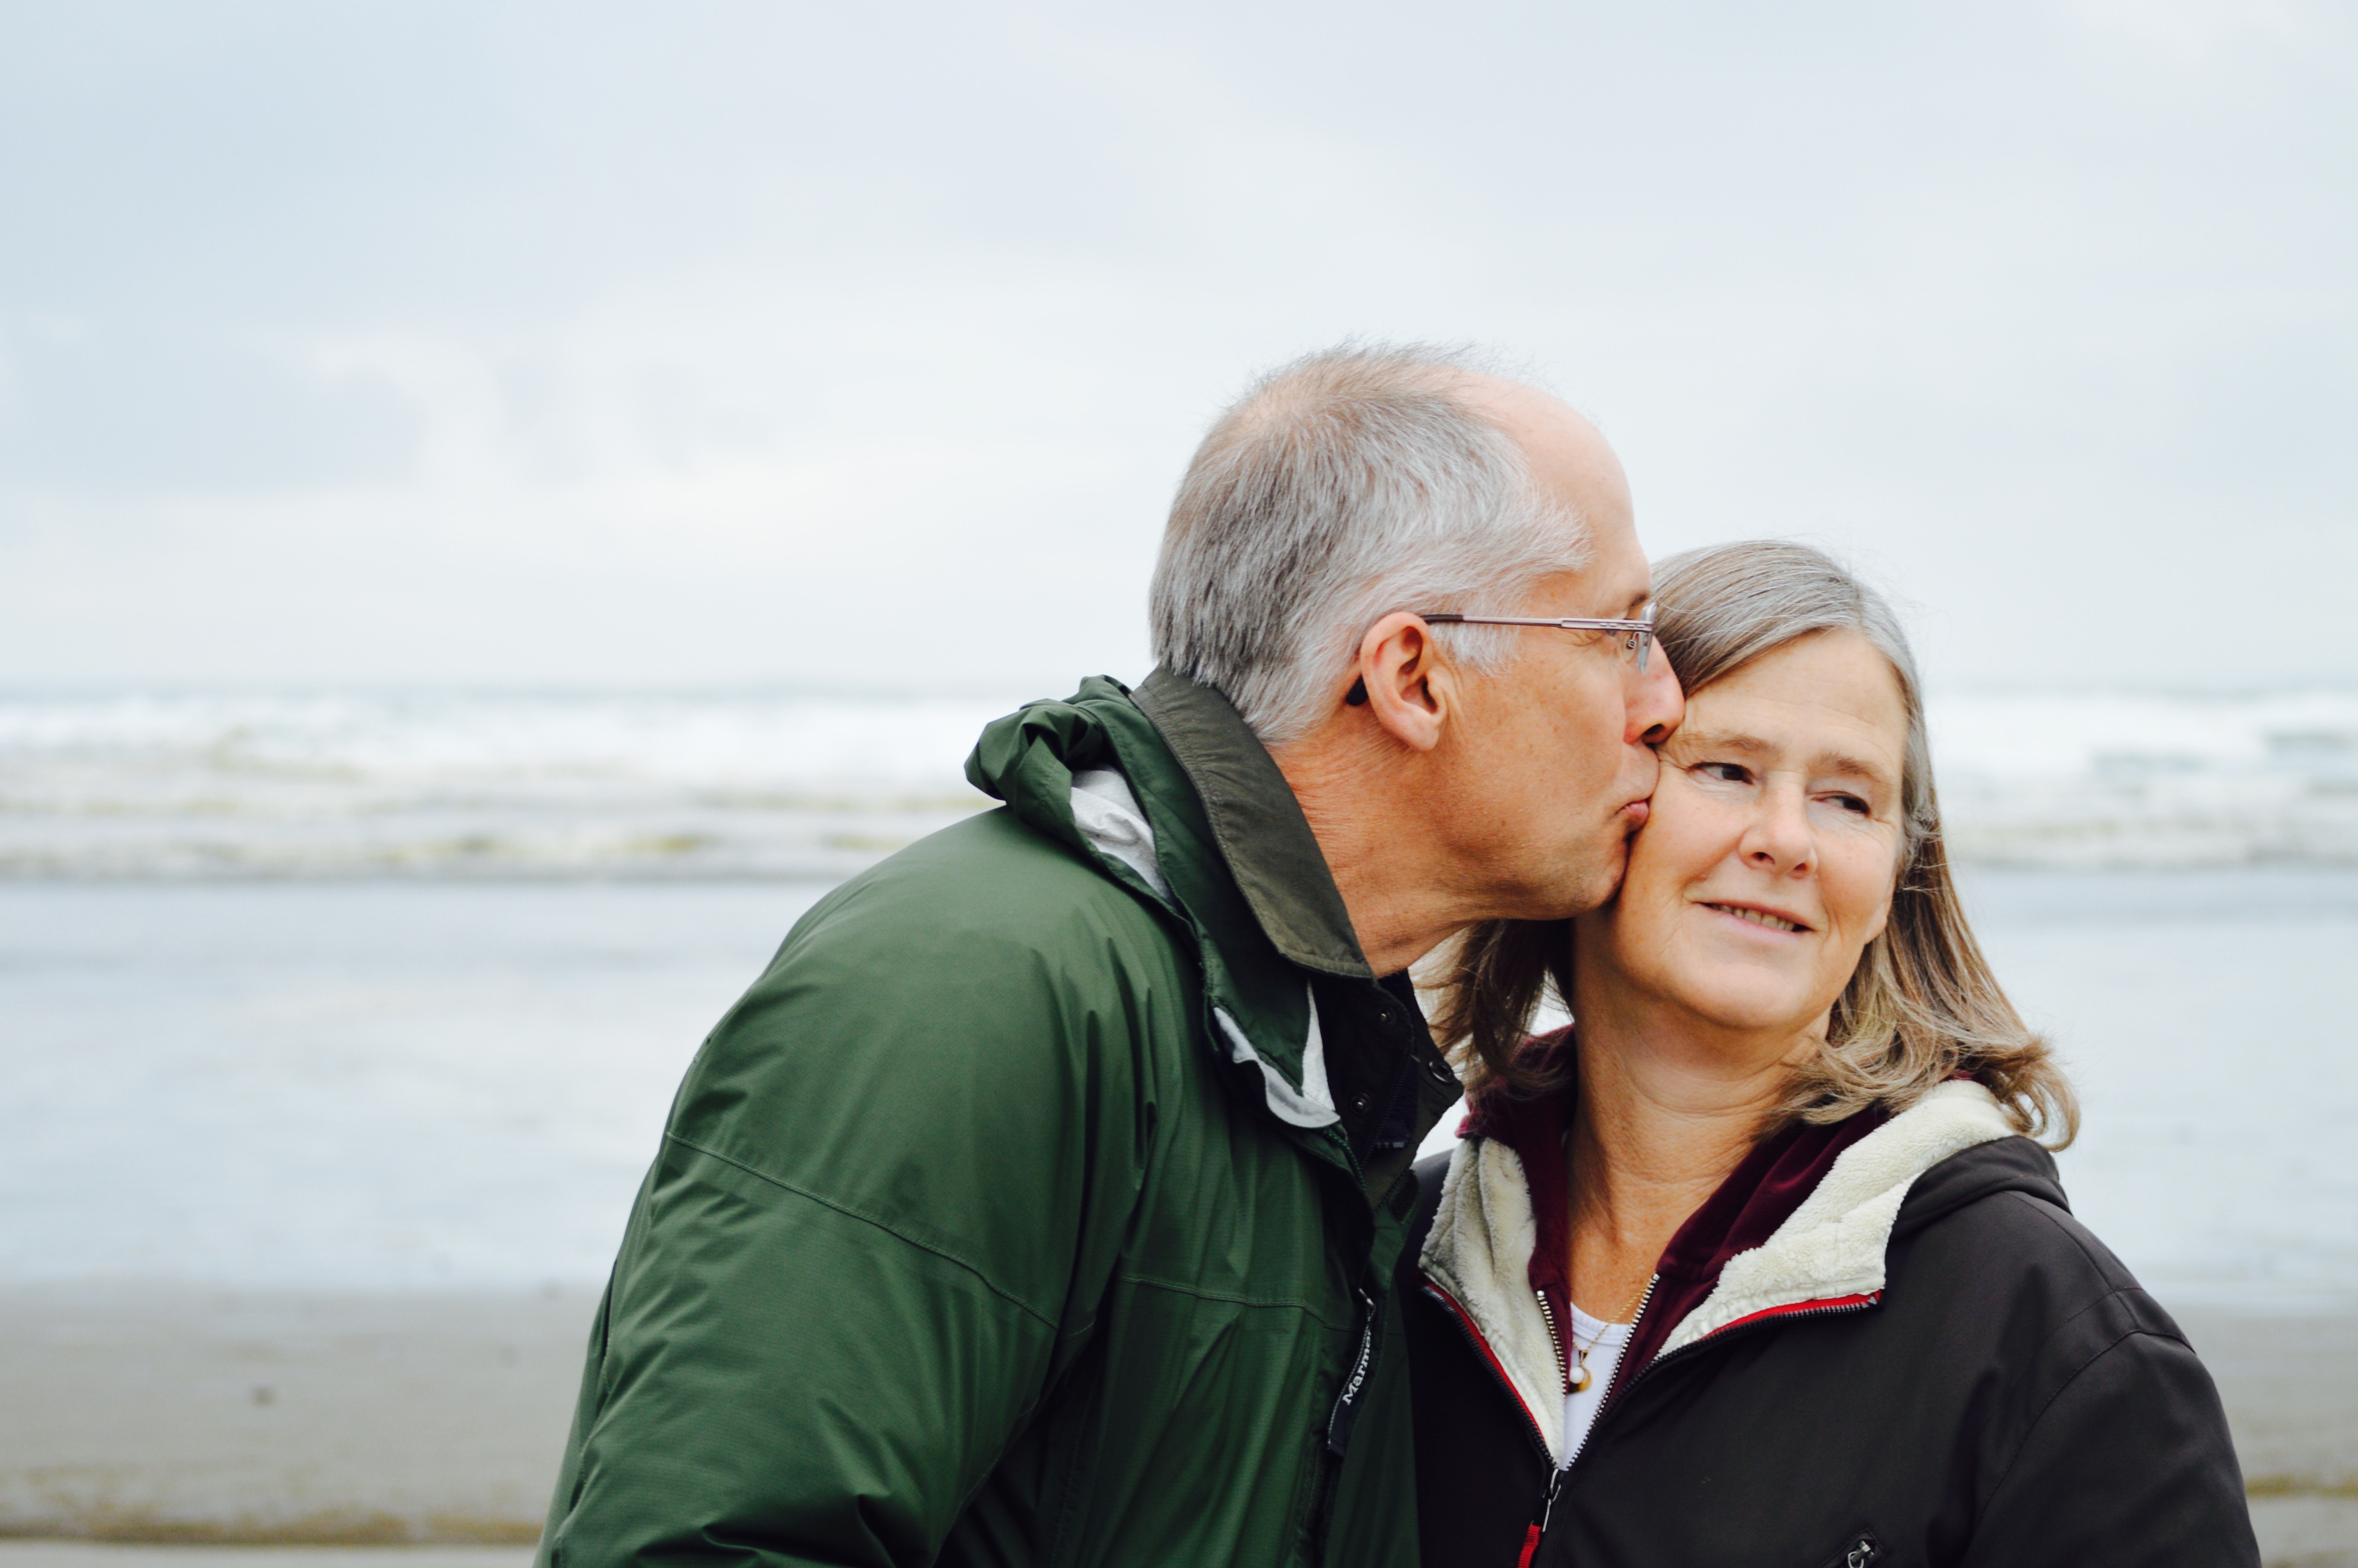 En man pussar kvinnan på kinden medan de står på en strand